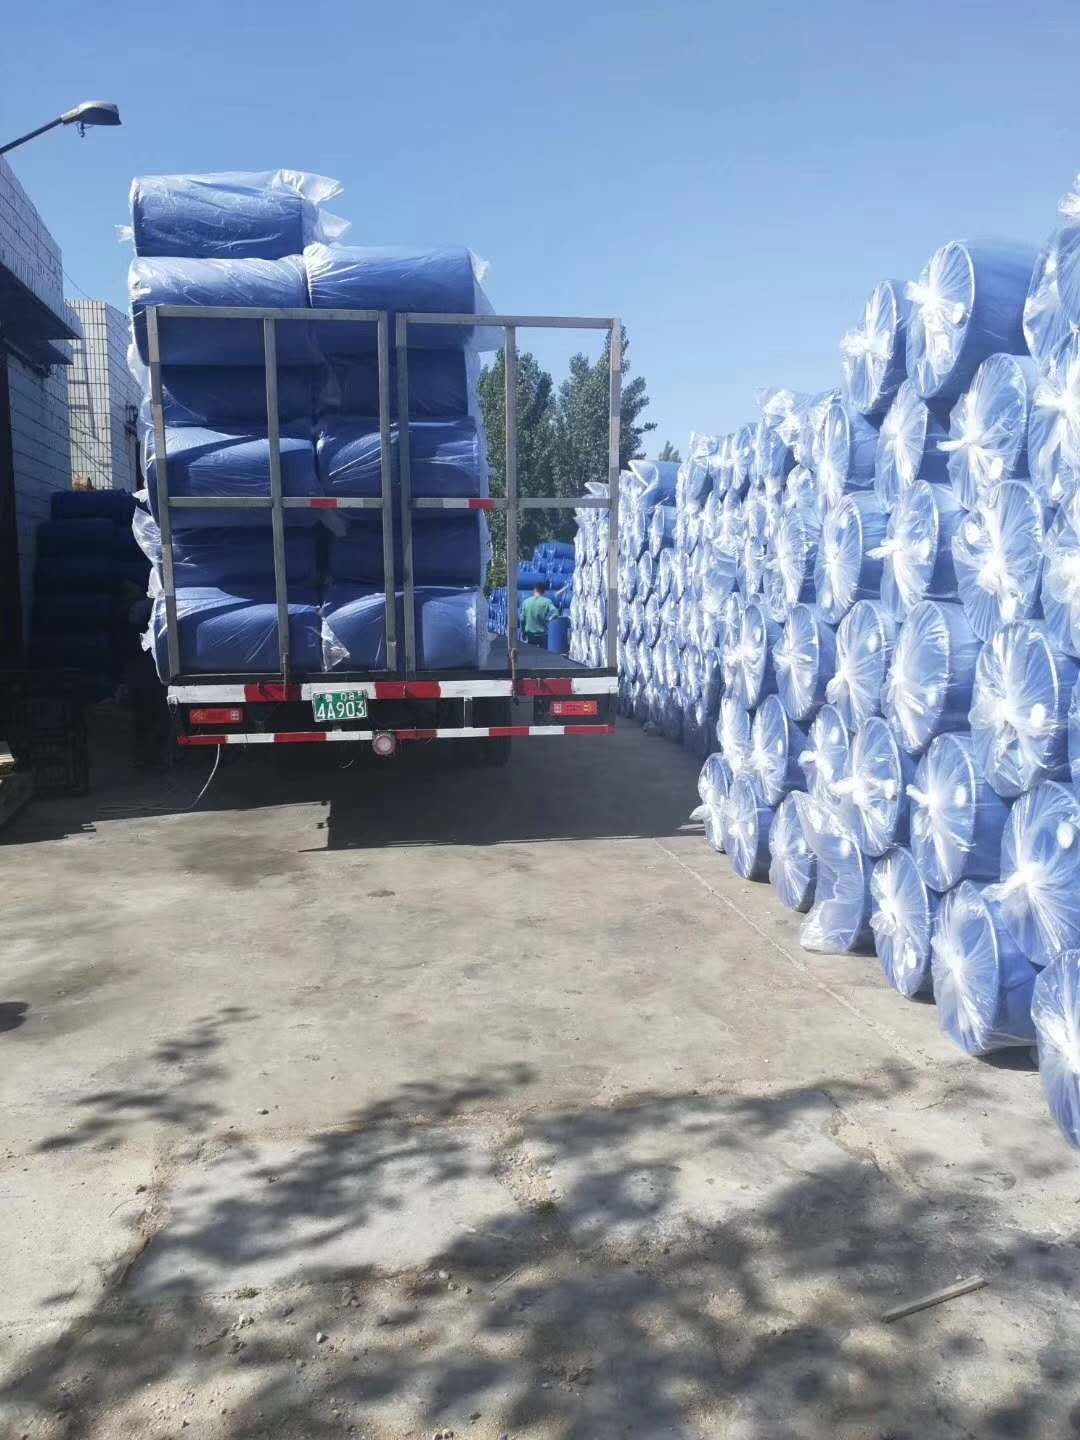 内蒙古200kg坚固耐磨塑料桶收费低